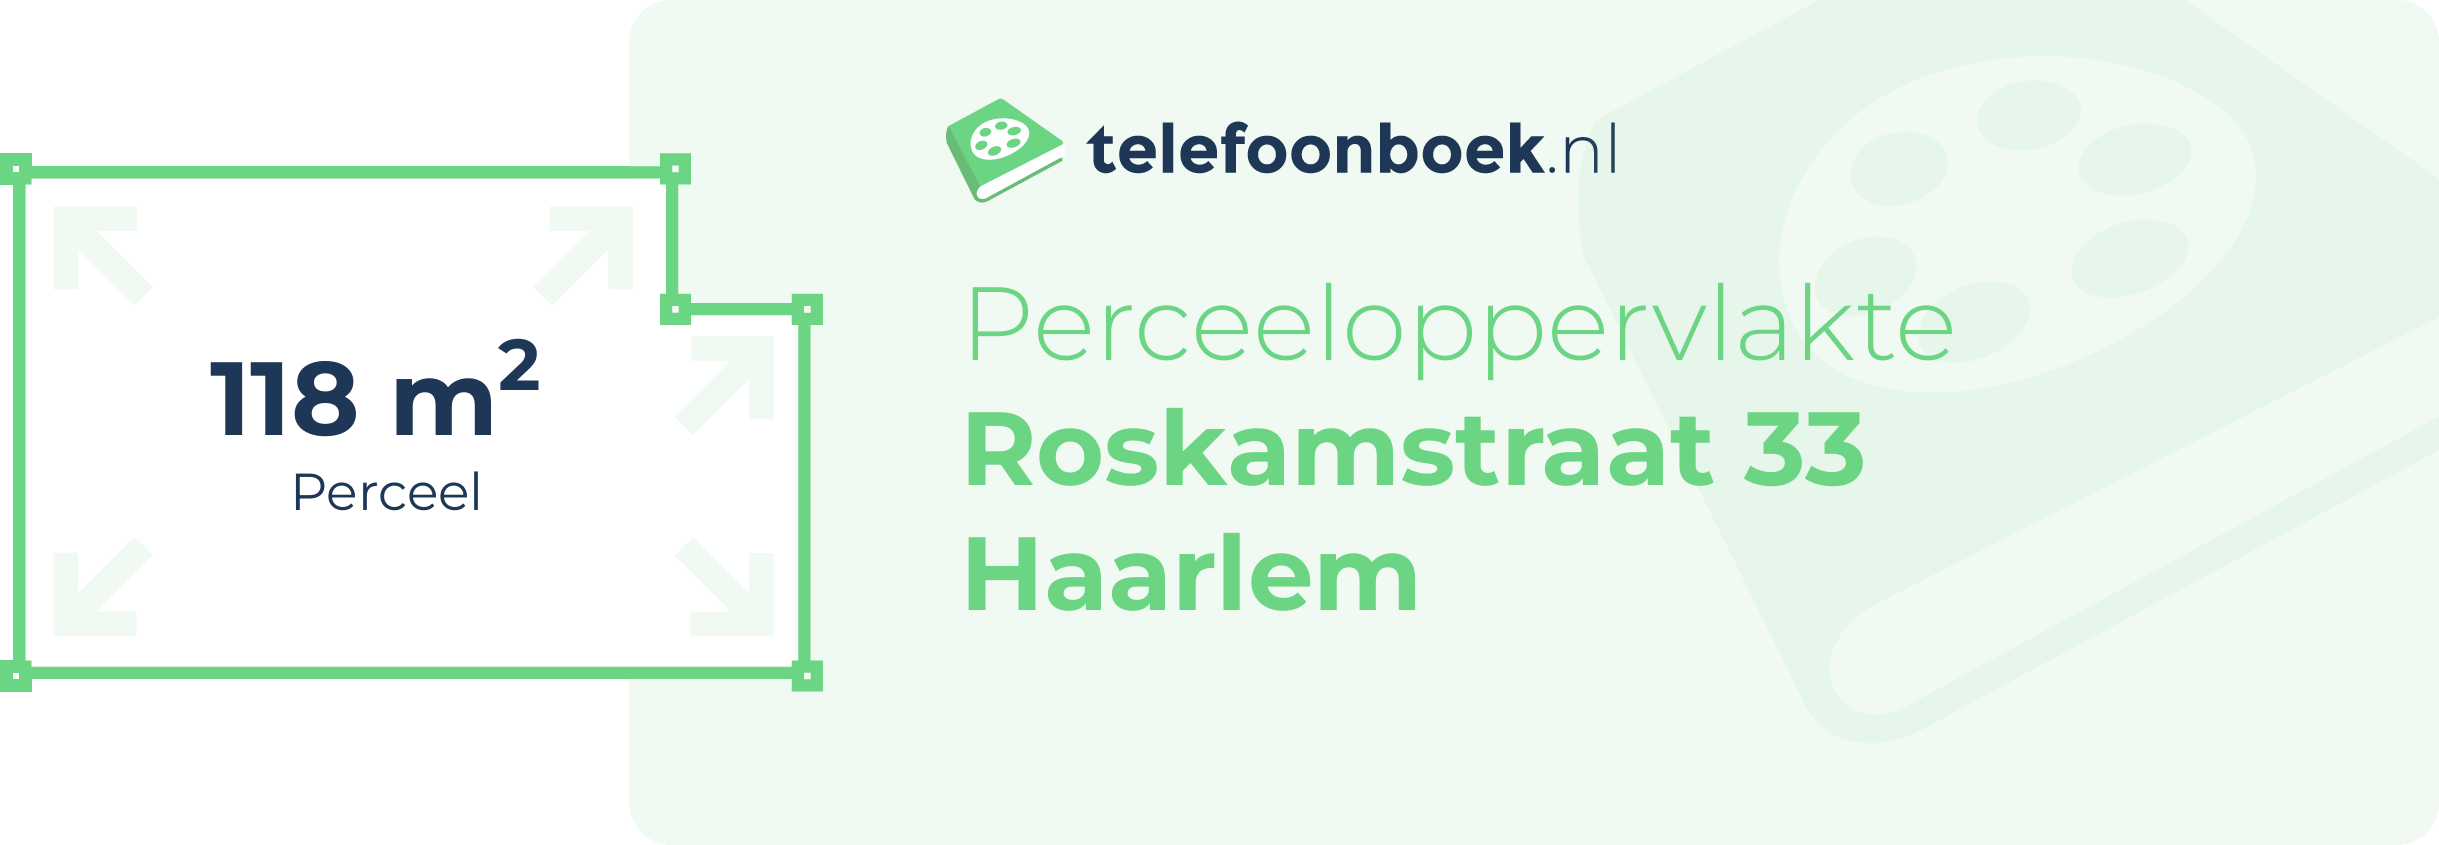 Perceeloppervlakte Roskamstraat 33 Haarlem